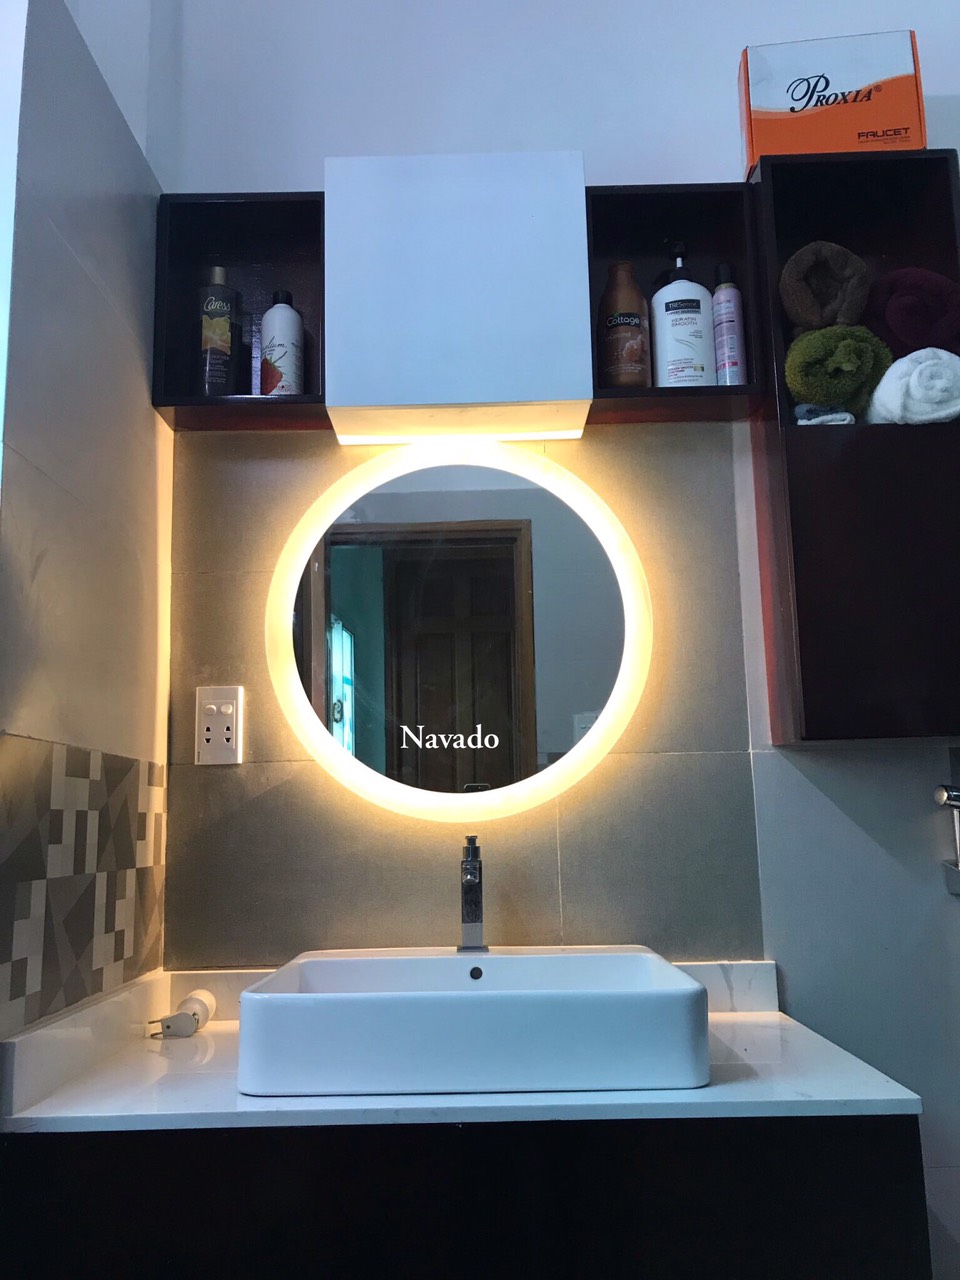 Với một gương đẹp và chất lượng, phòng tắm của bạn sẽ thêm phần sang trọng và tinh tế hơn rất nhiều. Hãy đến cửa hàng bán gương thiết bị vệ sinh để lựa chọn sản phẩm ưng ý nhất cho căn phòng tắm của bạn.